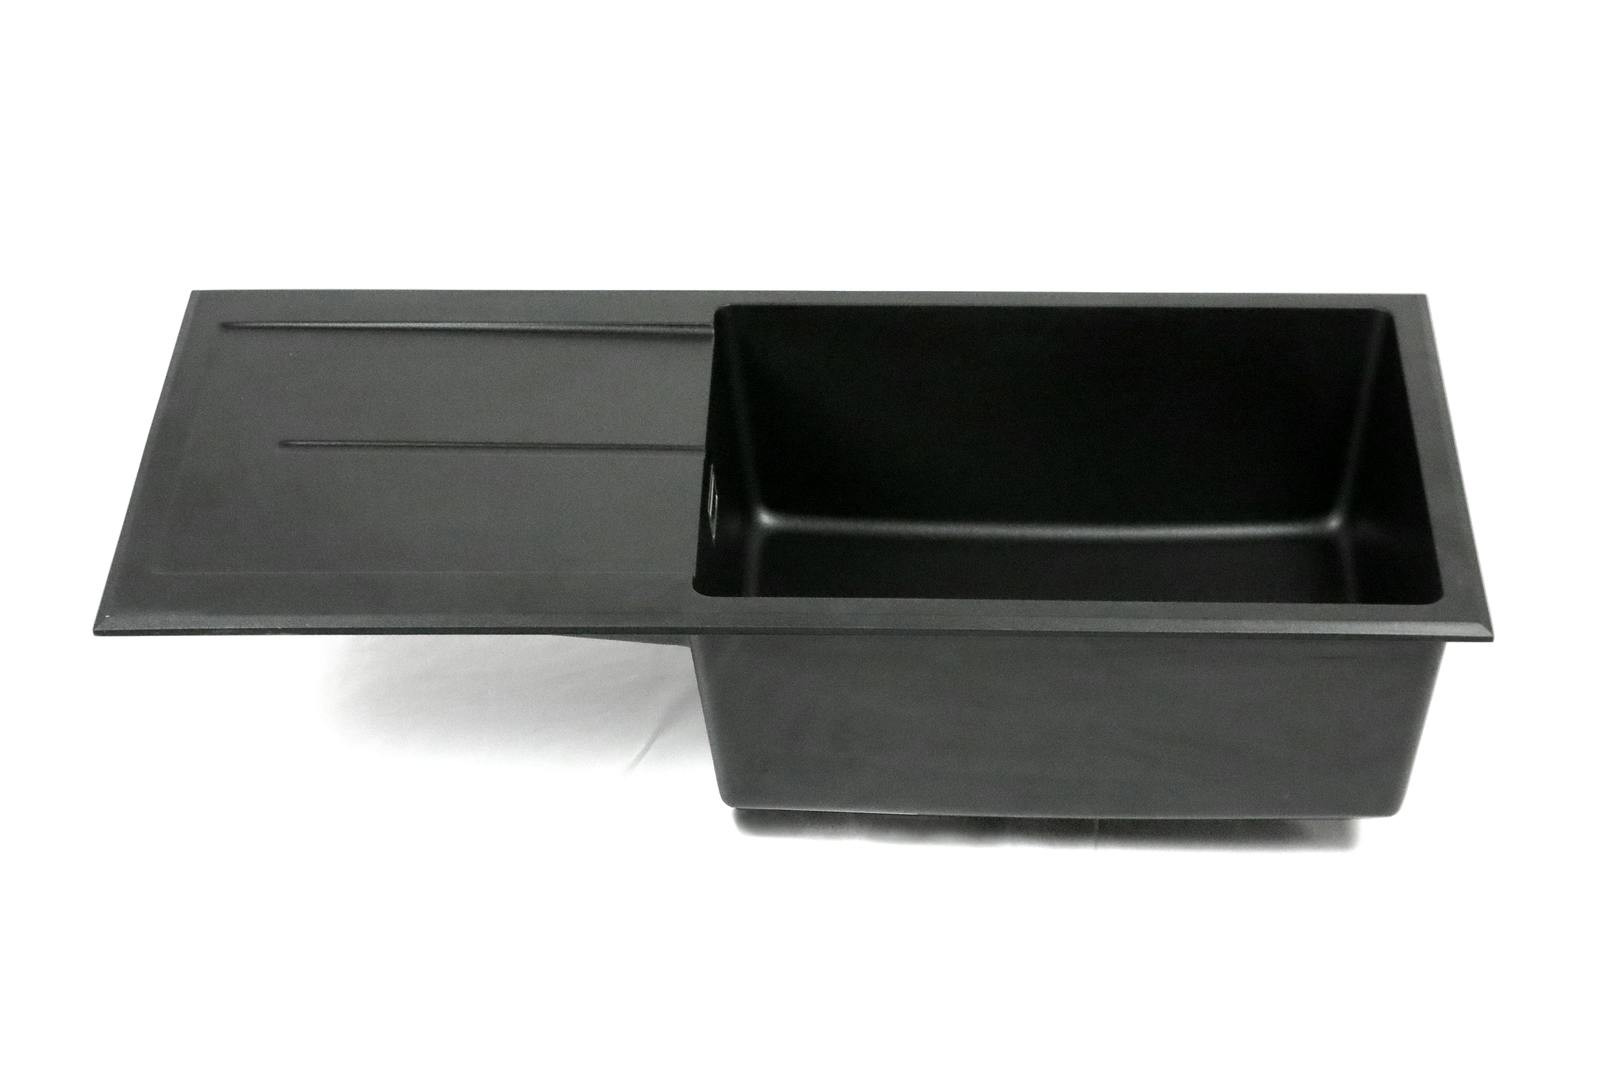 Einbauspüle Kingston Granitspüle 600 mm x 450 mm x 215 mm mit Zubehör  schwarz Granitoptik